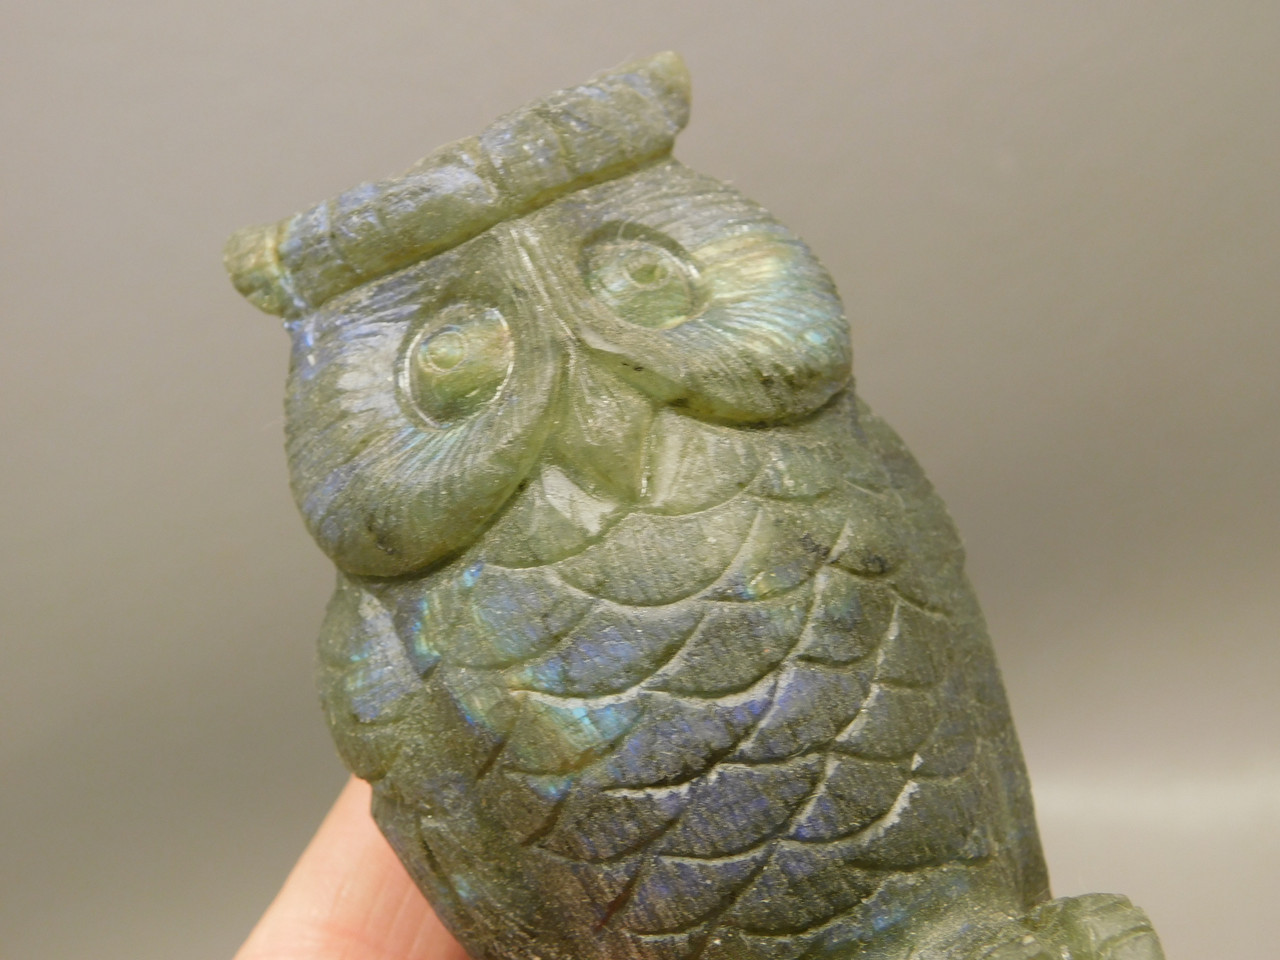  Owl Figurine Labradorite Gemstone Animal Stone Carving #O3